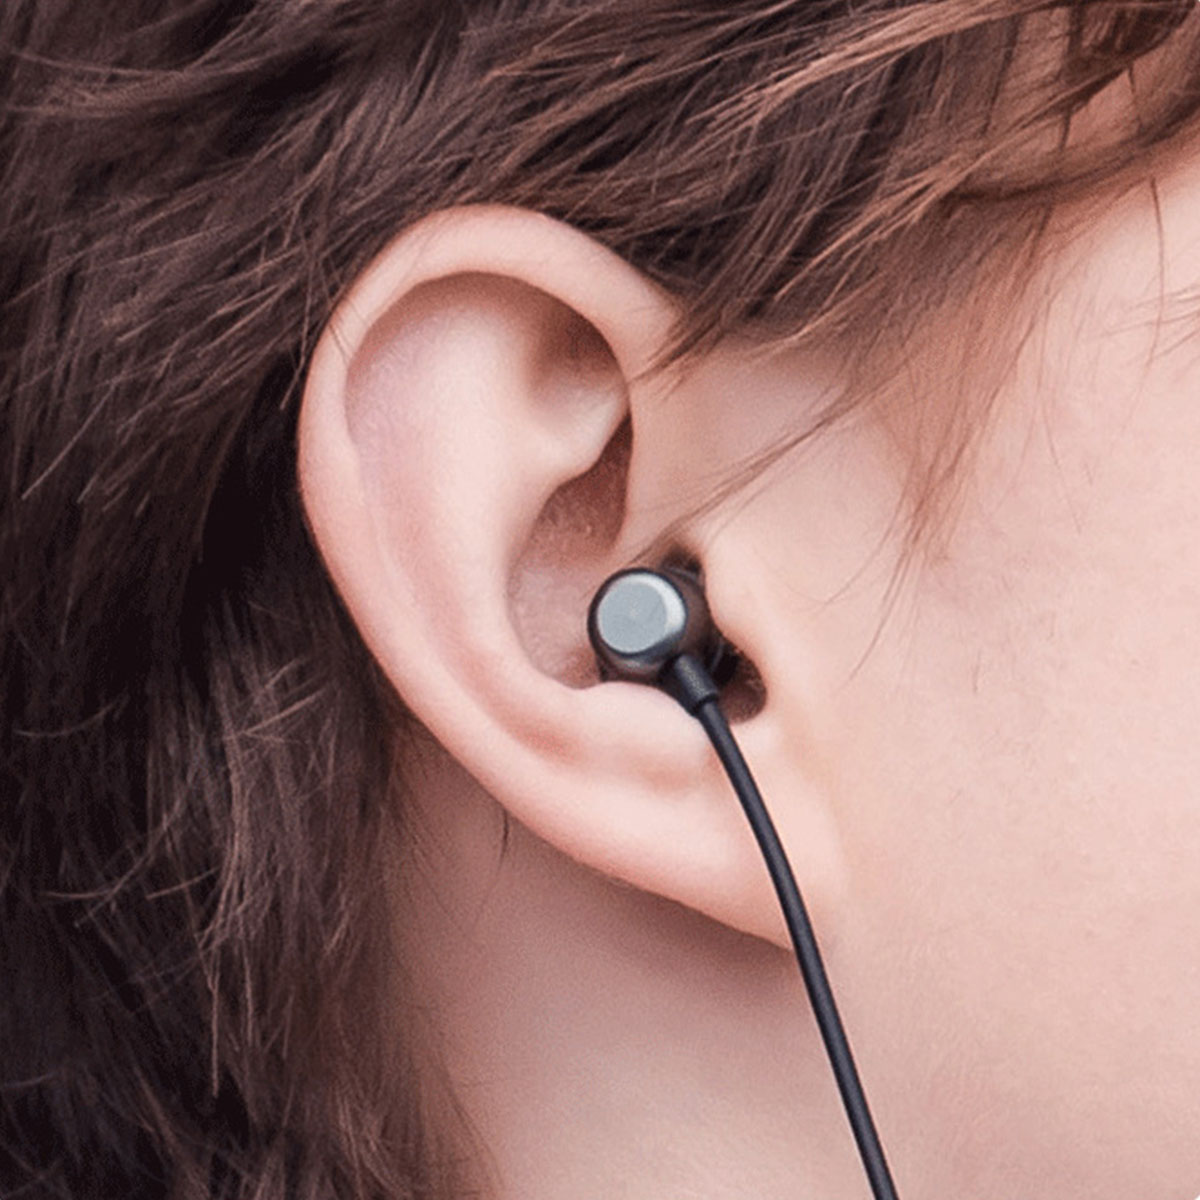 BRIGHTAKE Bluetooth Neckband Begleiter – für Bluetooth-Kopfhörer Kopfhörer Der Sportler!, Perfekte Schwarz Drahtlose